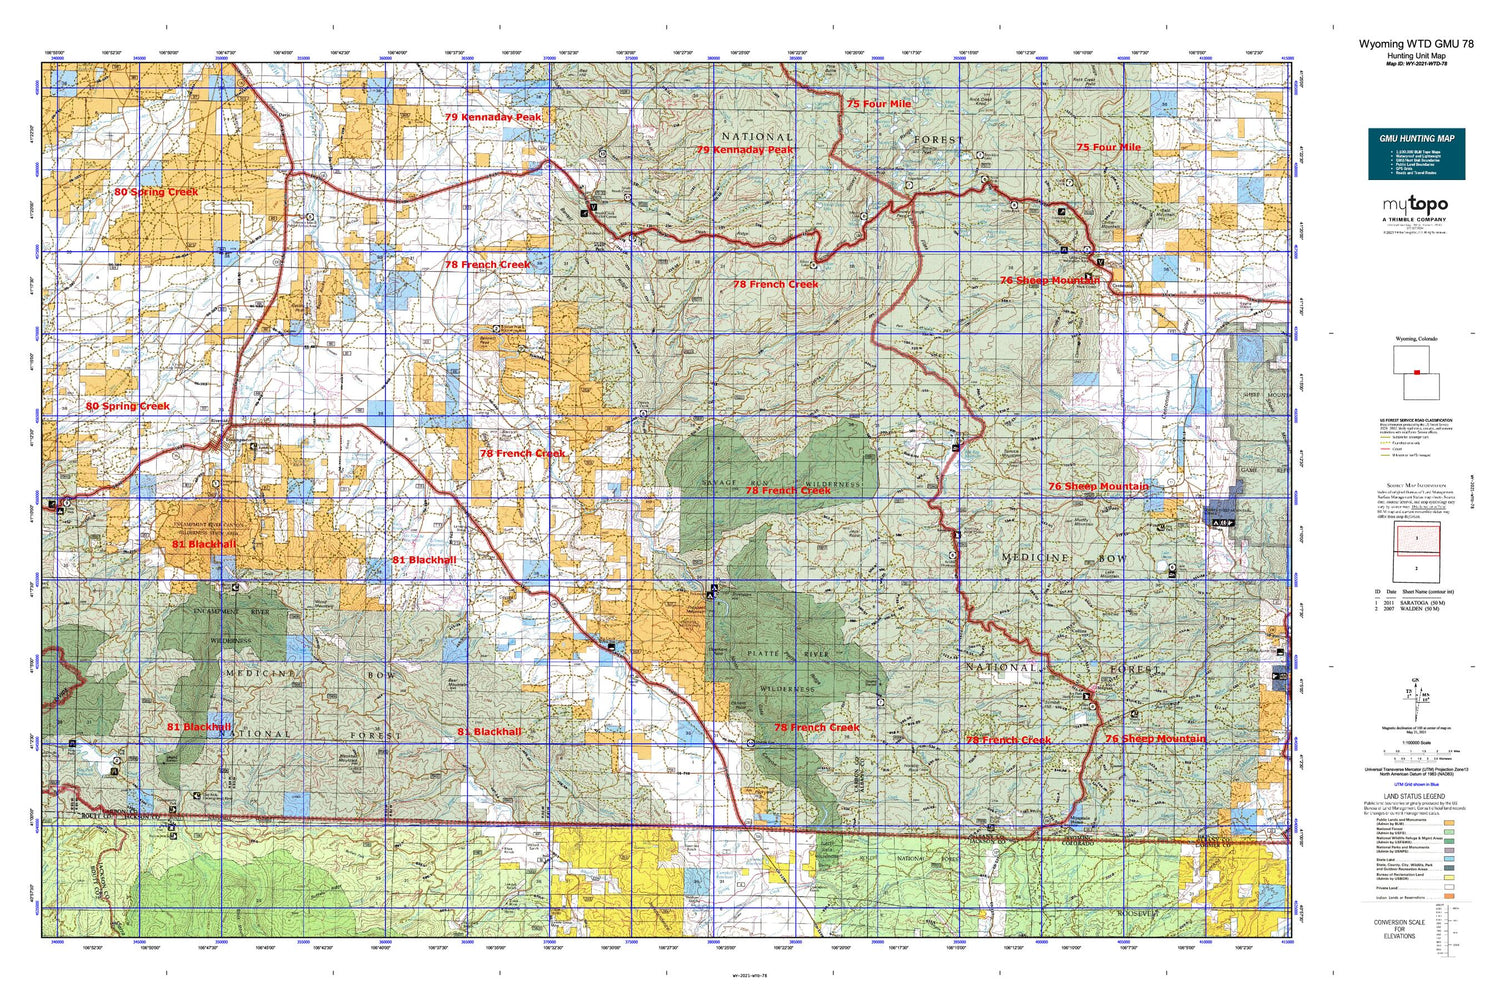 Wyoming Whitetail Deer GMU 78 Map Image